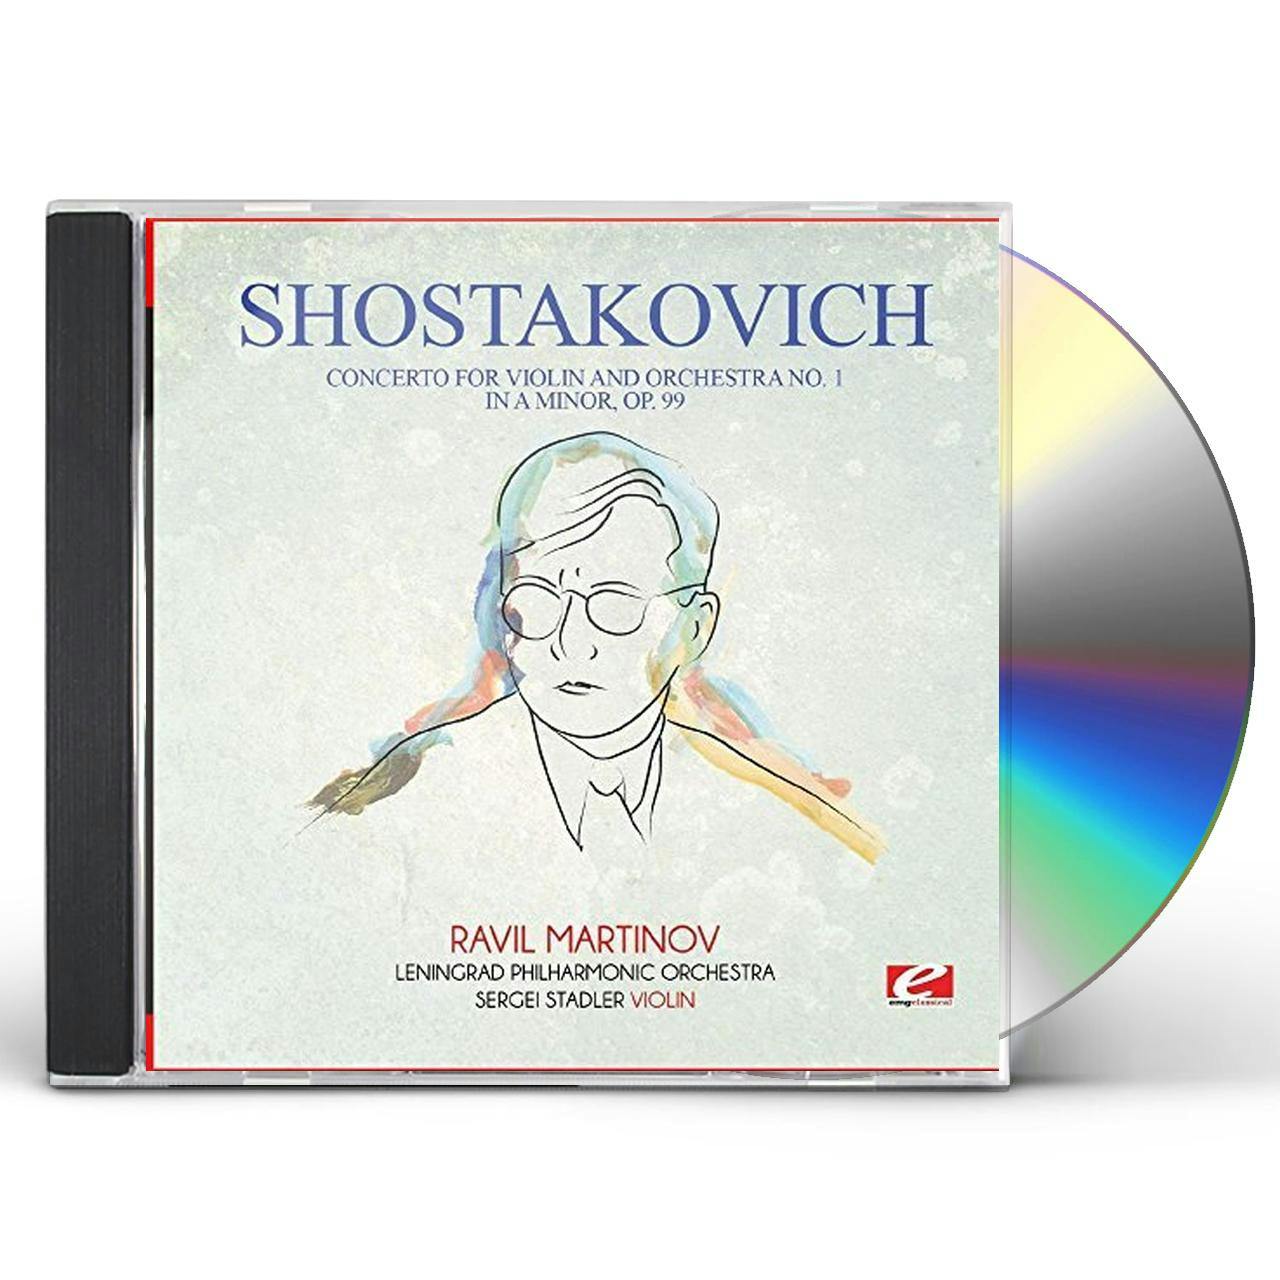 FOR　IN　NO.　Shostakovich　ORCHESTRA　A　CONCERTO　CD　VIOLIN　MINOR